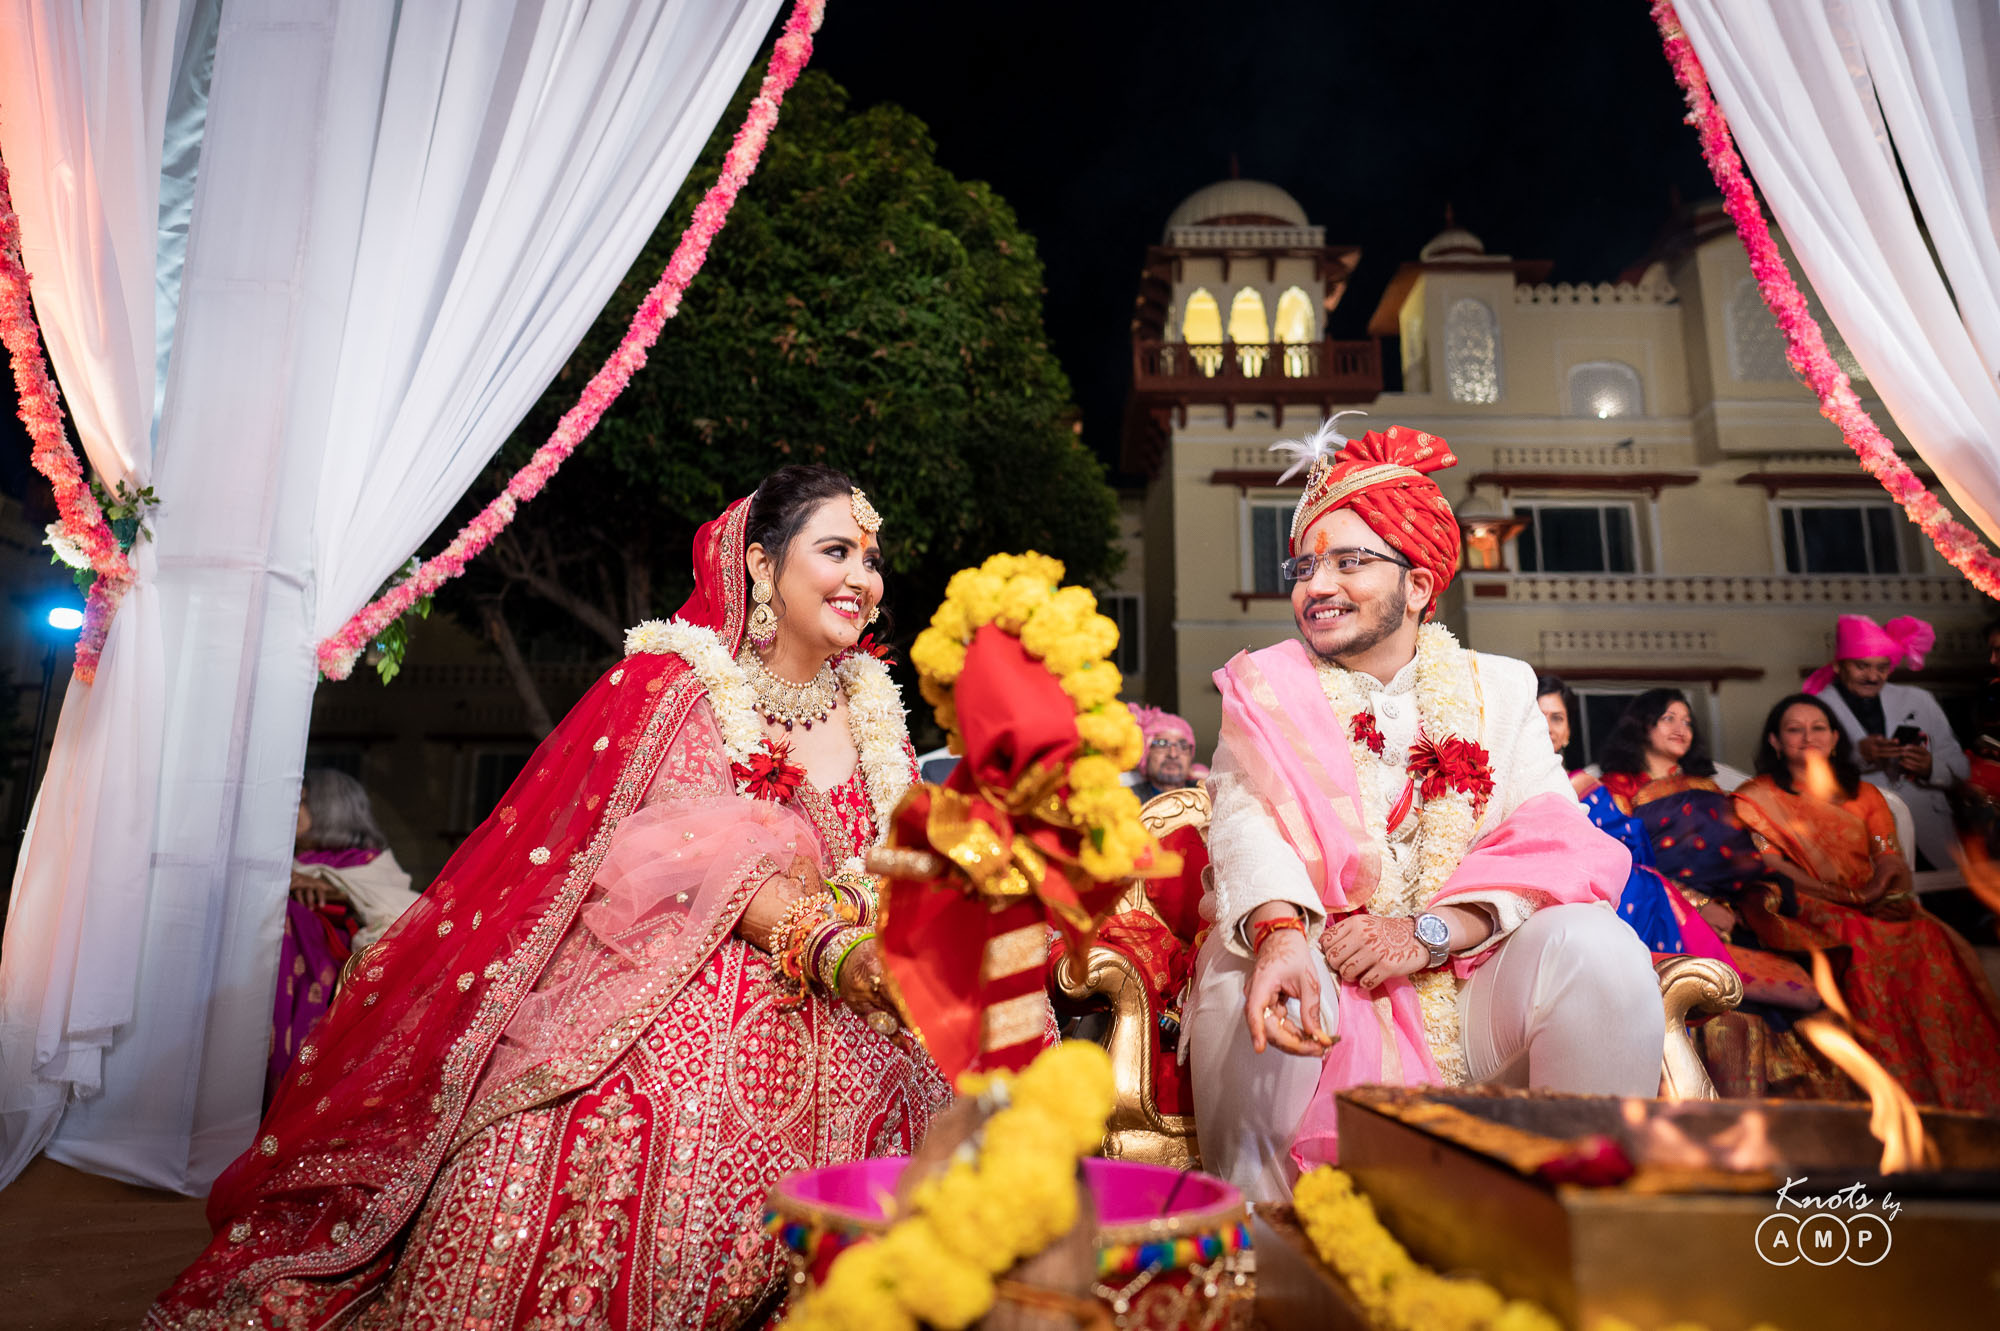 Destination wedding at Jai mahal Palace